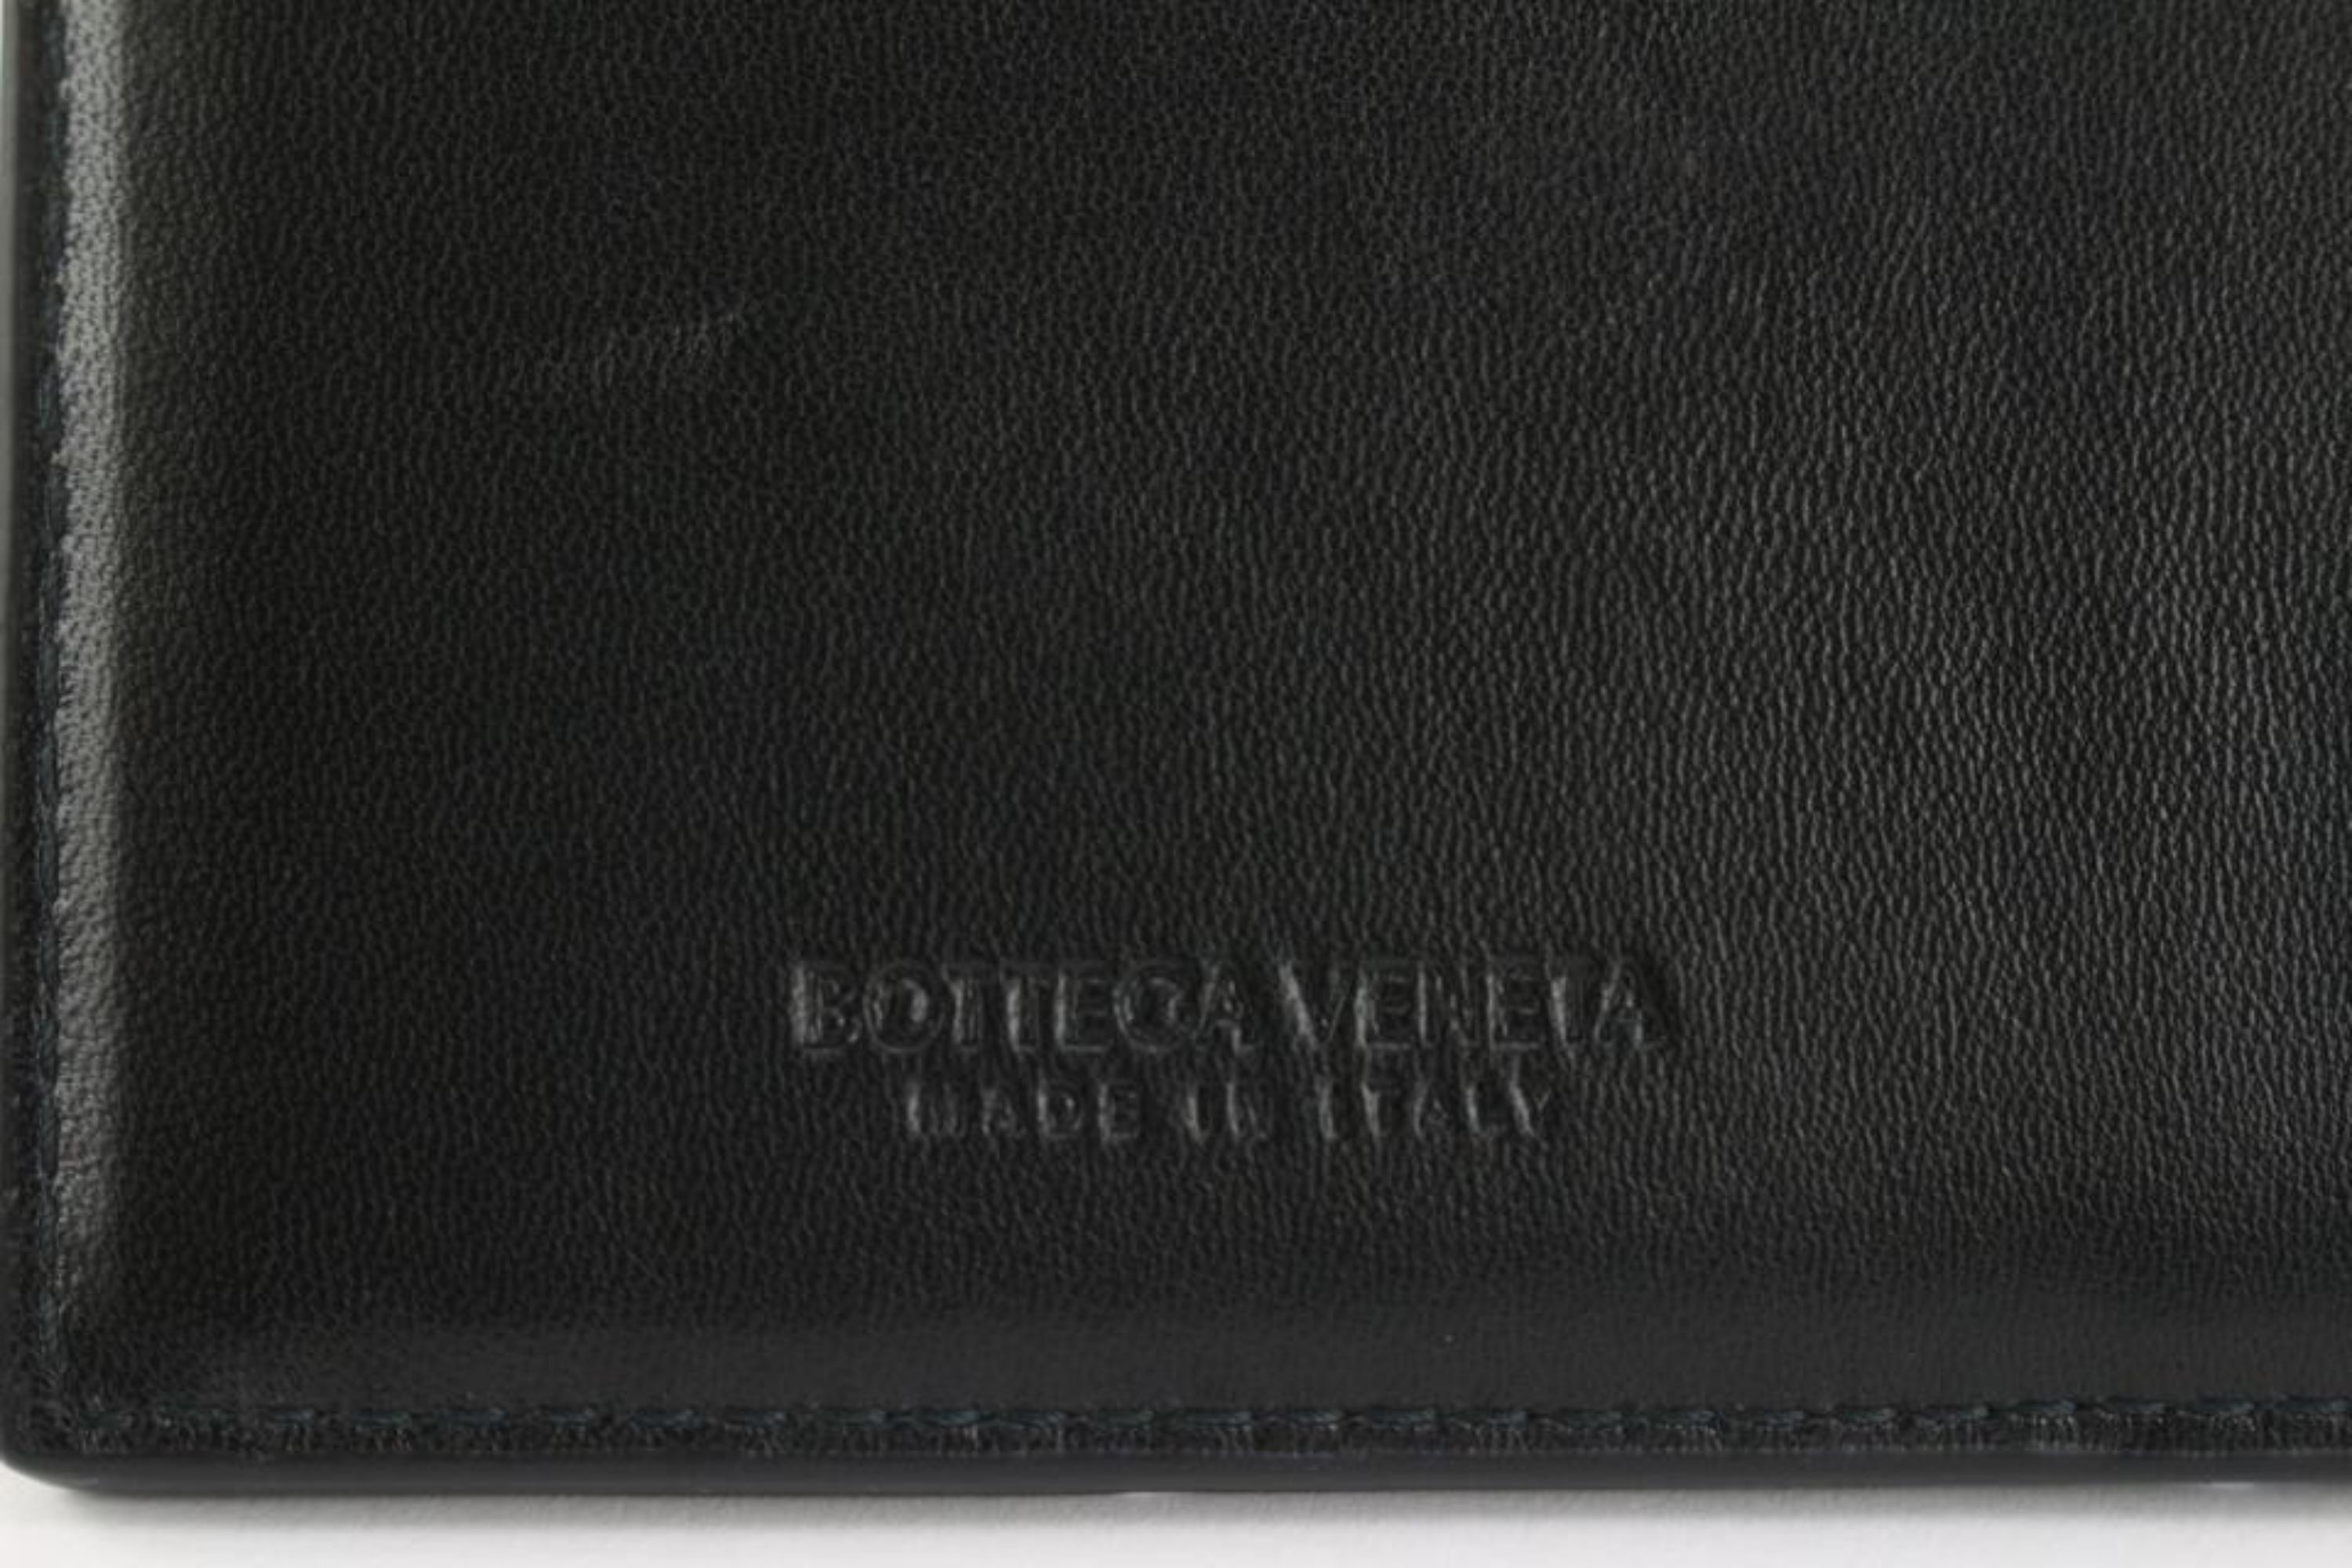 Bottega Veneta Black Intrecciato Leather Zipped Card Holder 1123bv34 For Sale 7